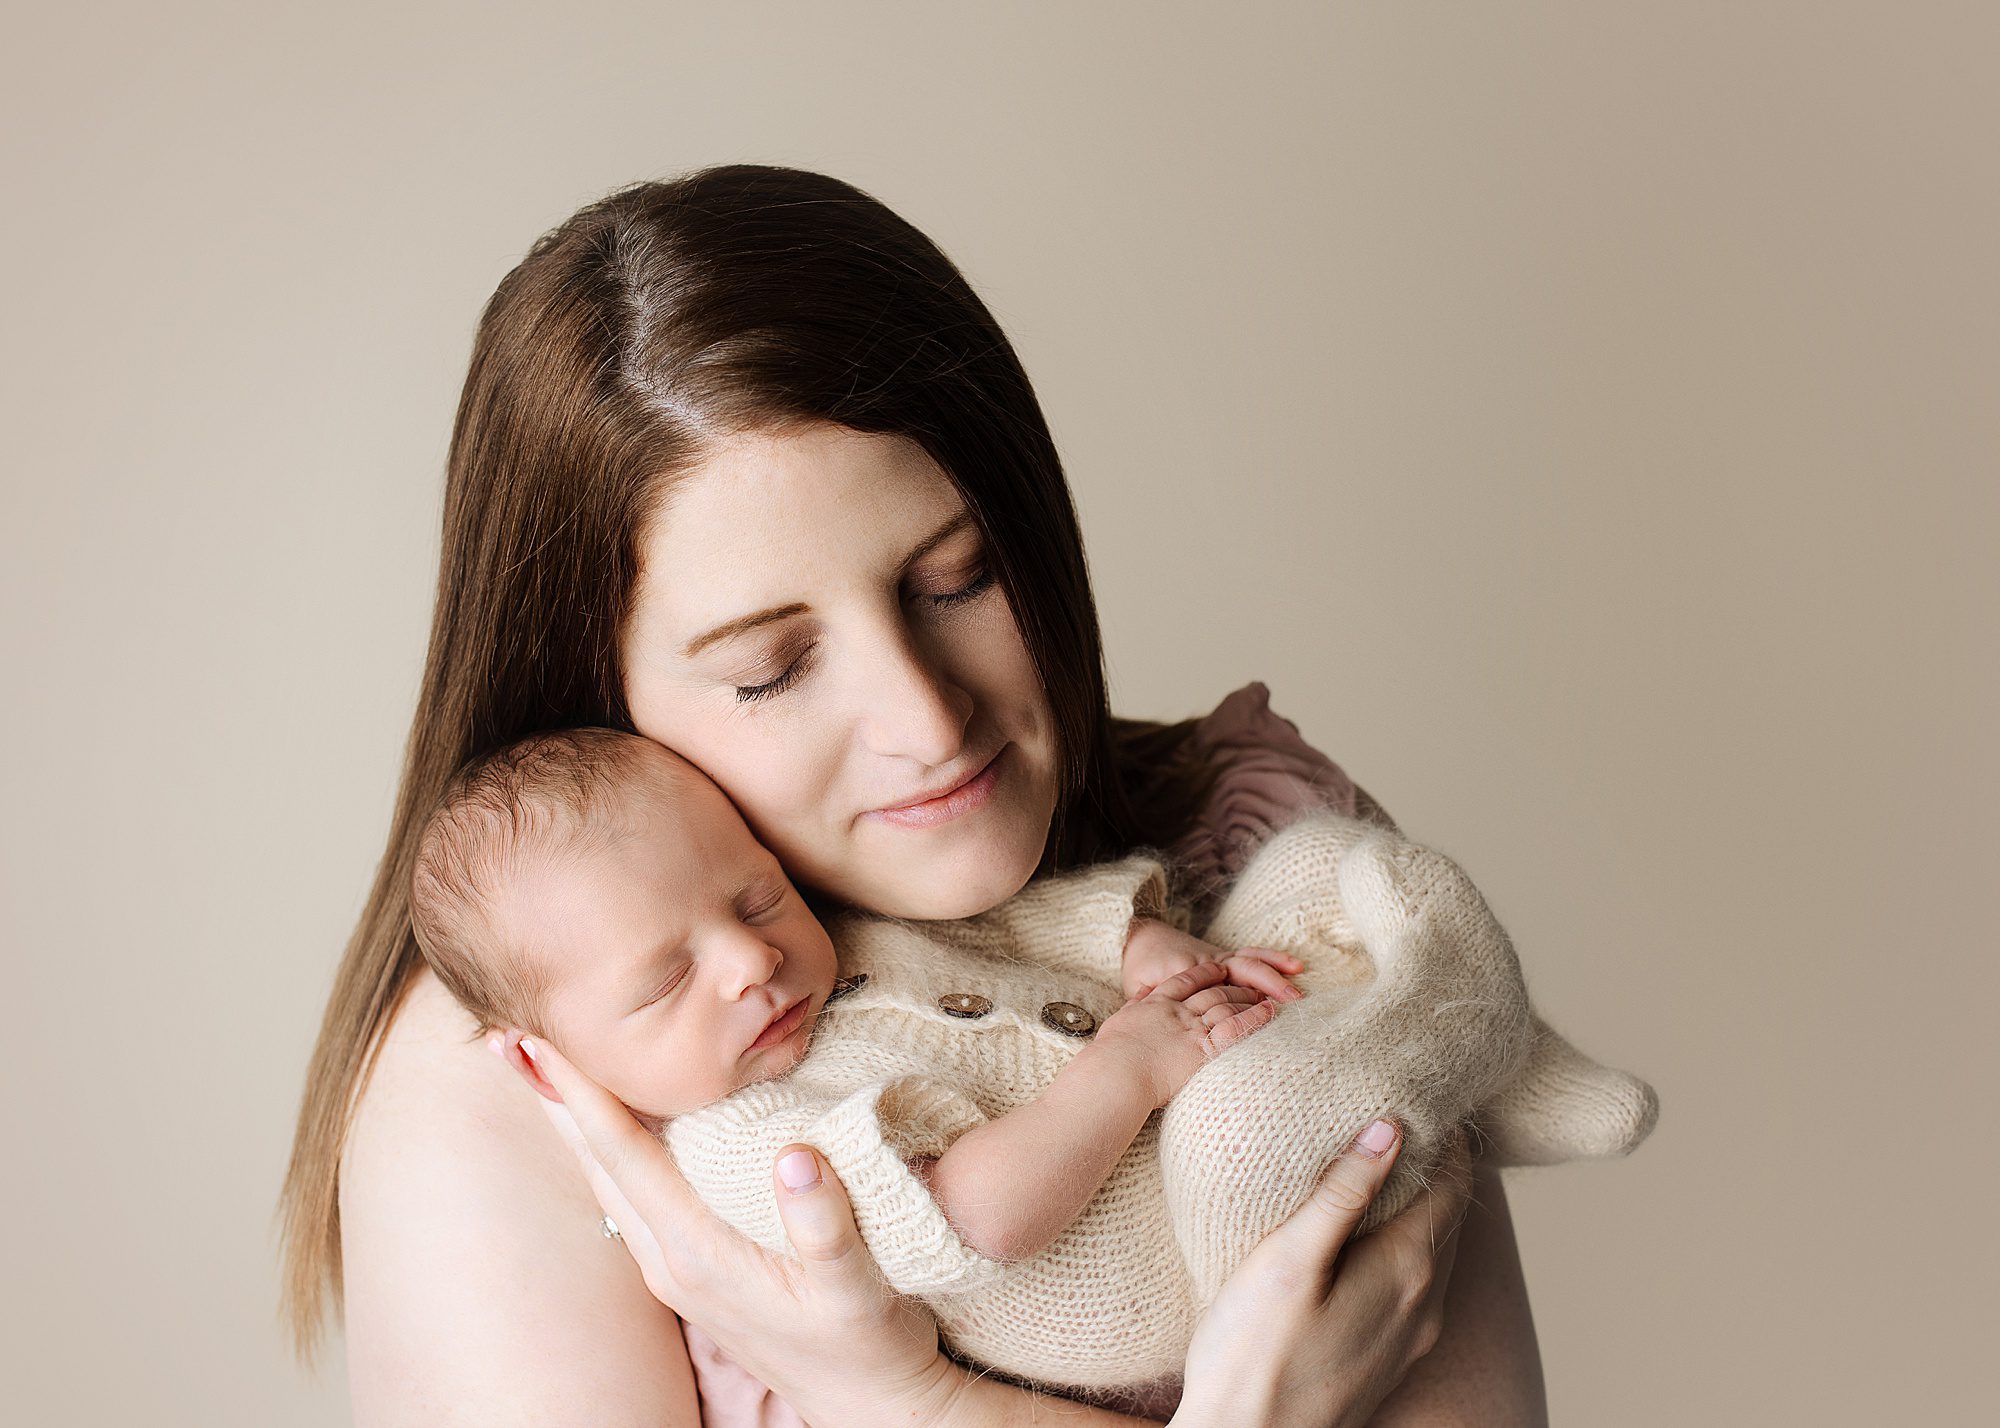 edmonton newborn photographer, edmonton maternity photographer